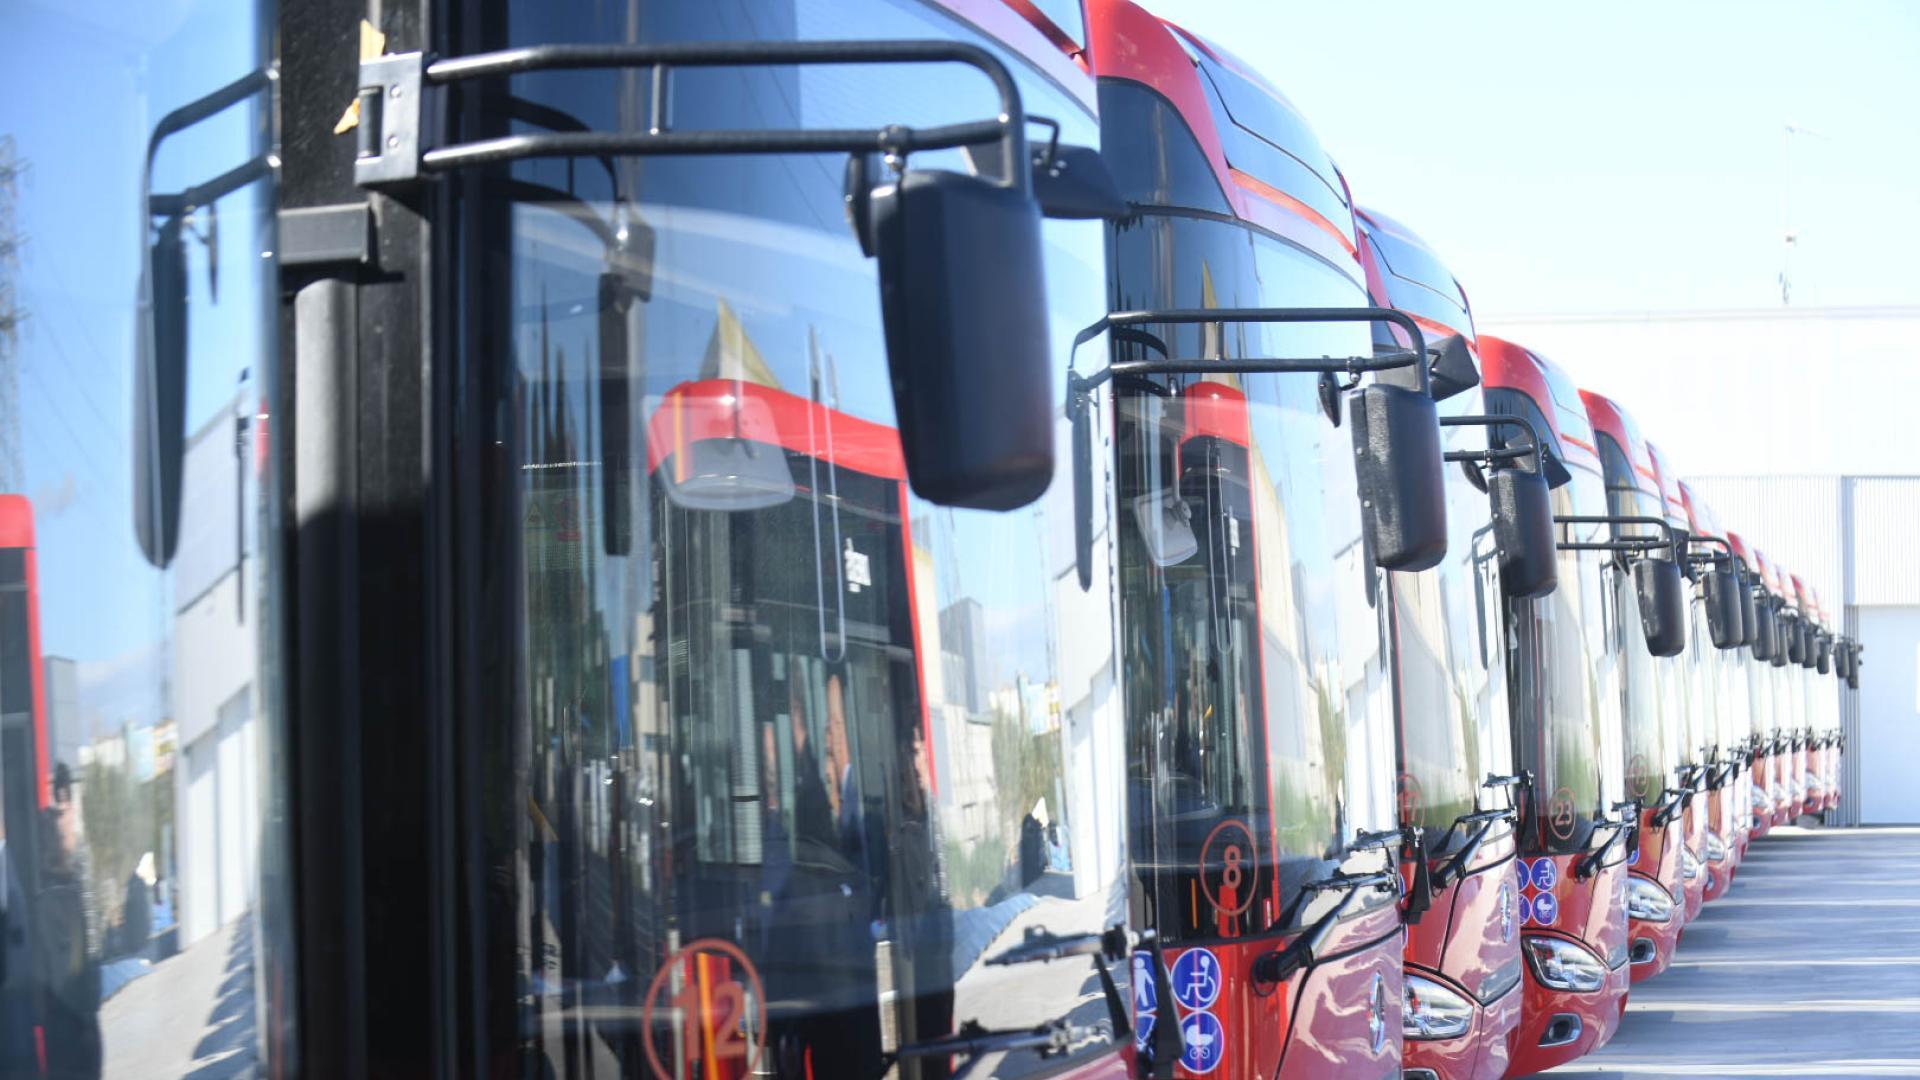 así son nuevos autobuses del área metropolitana de zaragoza: eléctricos y ‘made in china’